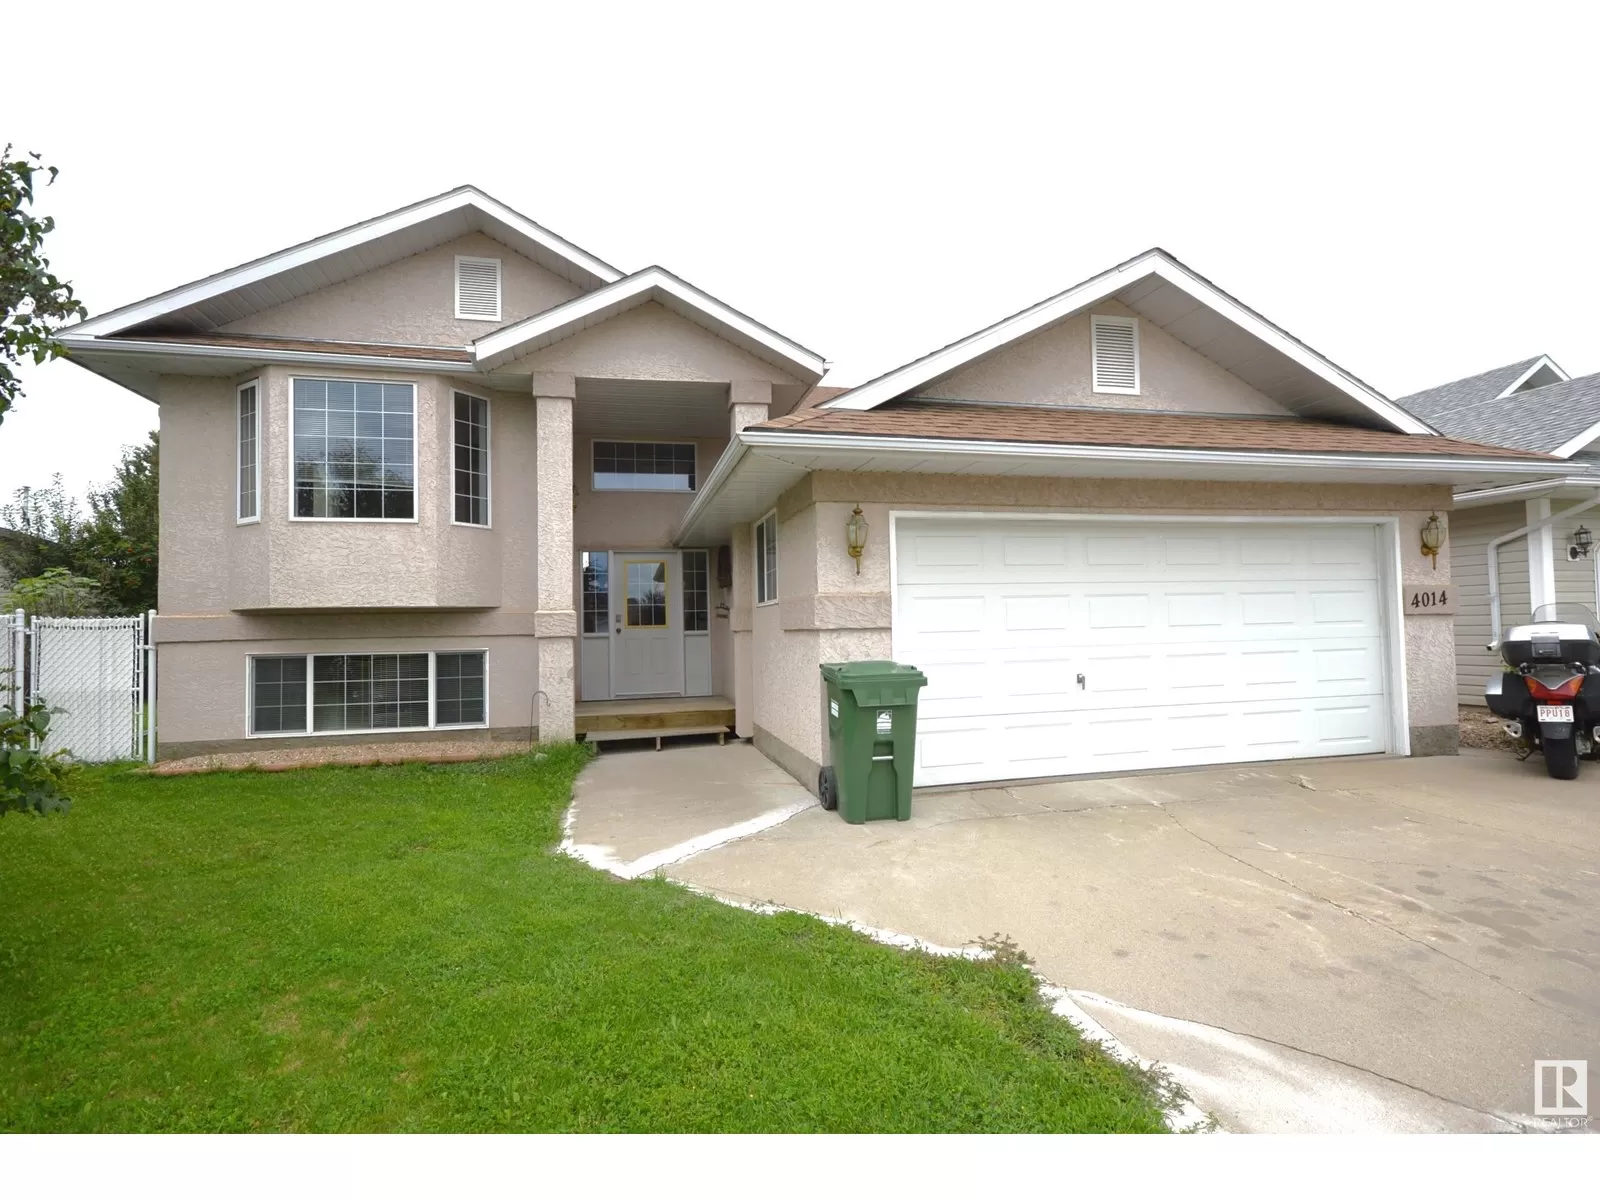 House for rent: 4014 38 St, Bonnyville Town, Alberta T9N 2J1